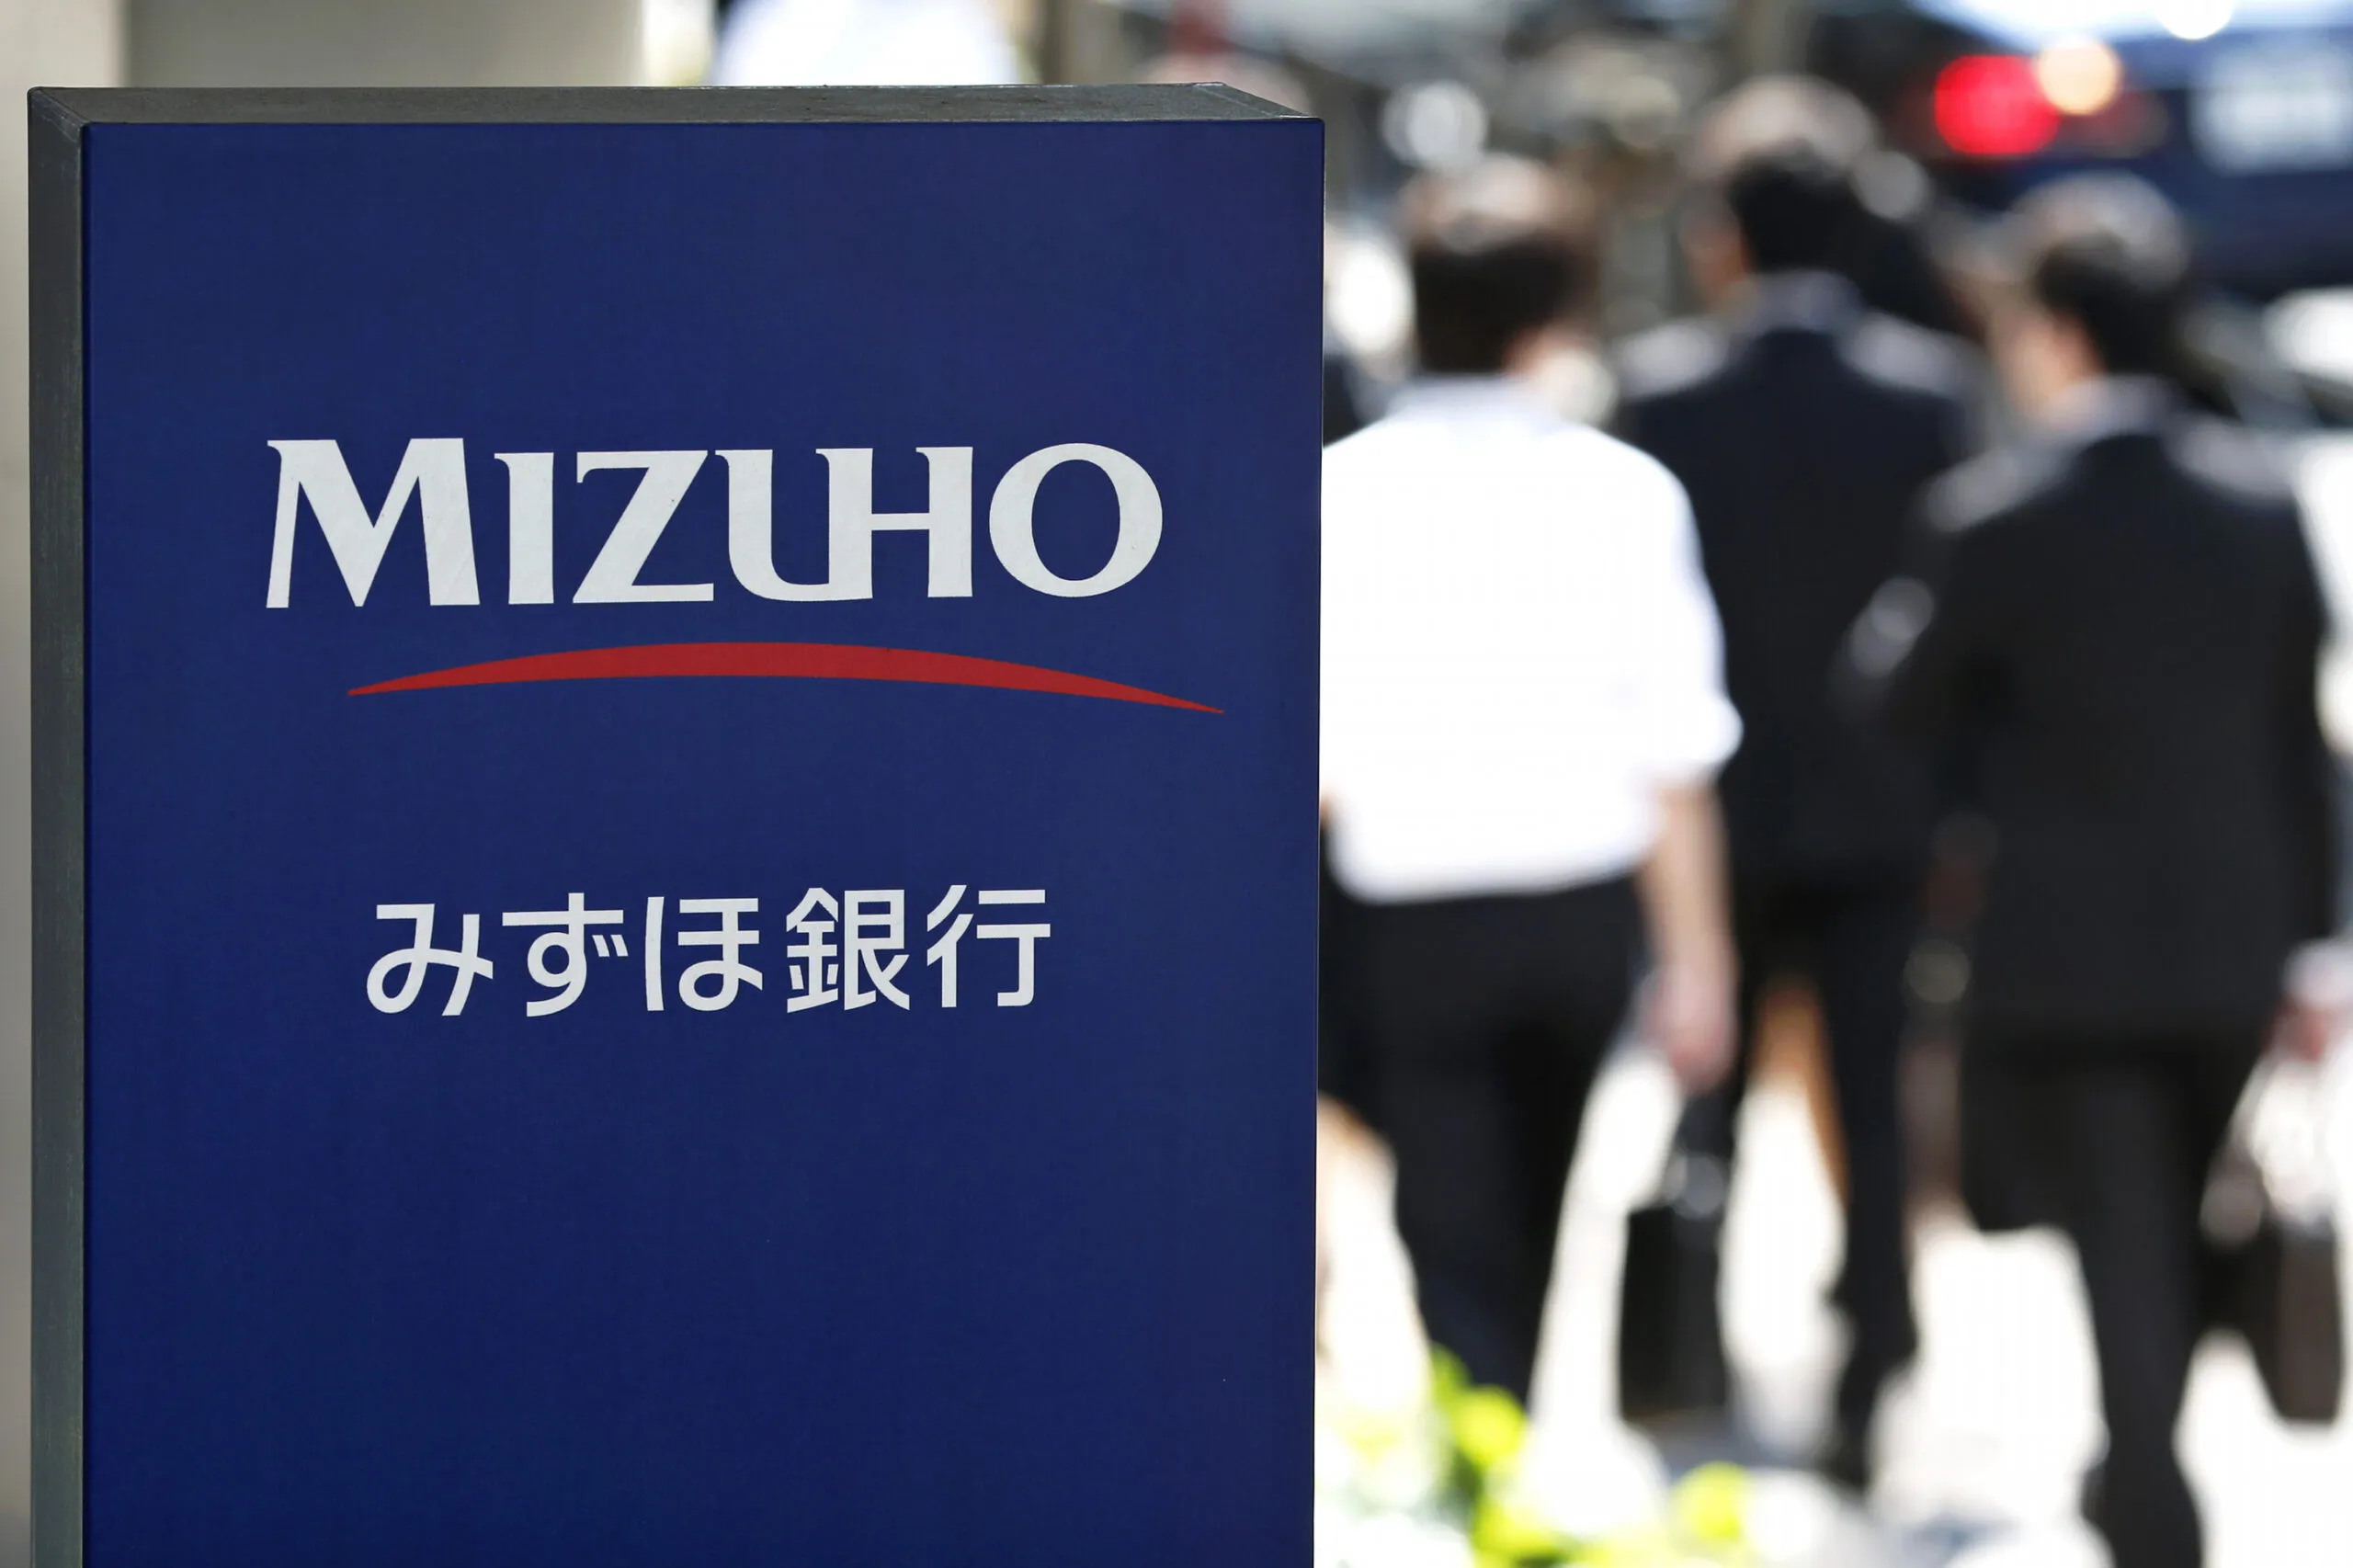 Banco japonés Mizuho iniciará operaciones en México